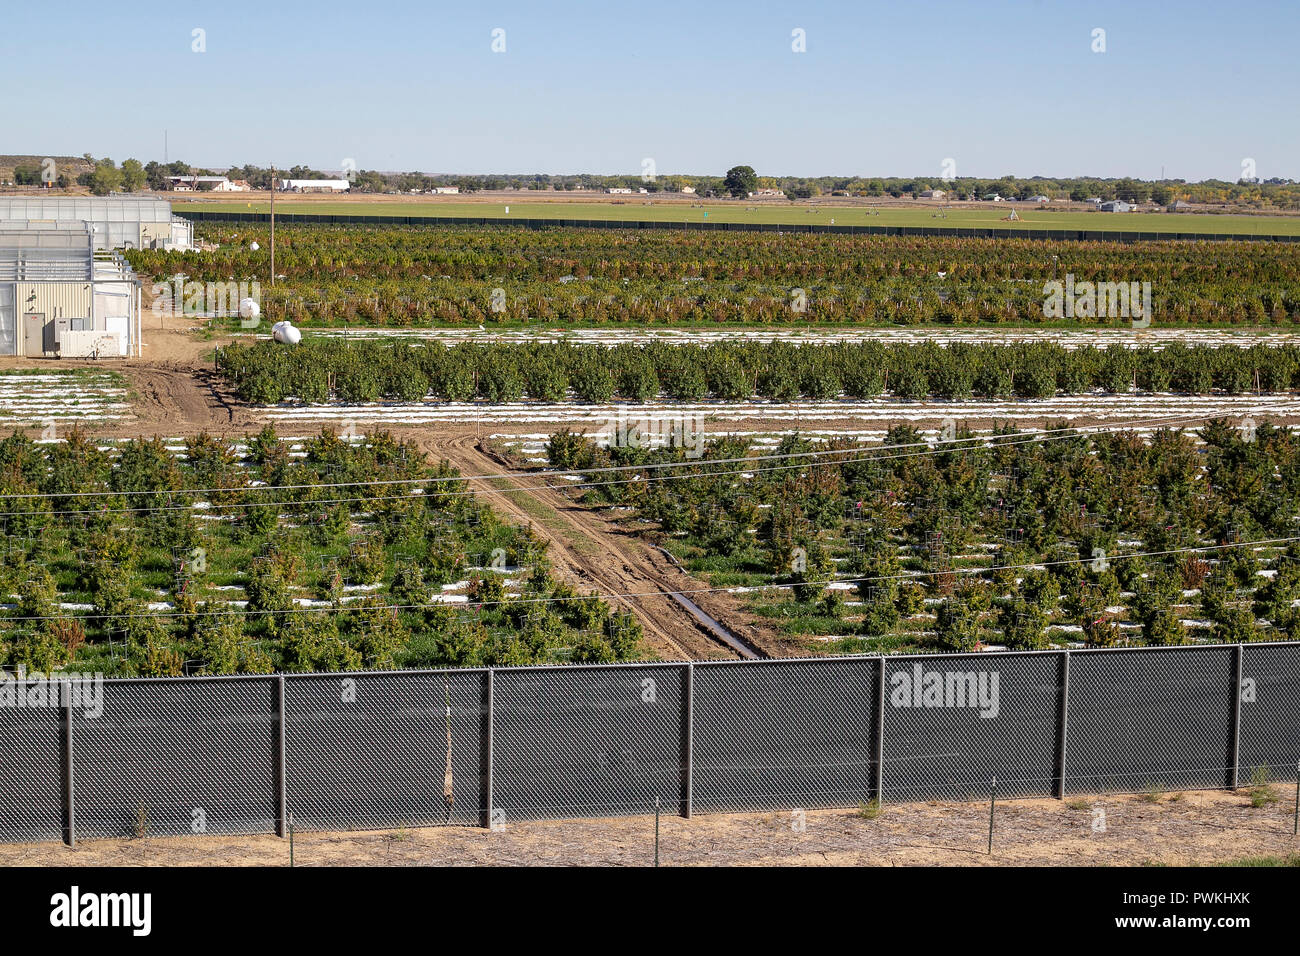 Outdoor legal Cannabis oder Marihuana Farm in der Erntezeit in der Nähe des Pueblo, Colorado. durch den Staat Colorado Lizenziert seit 2014. Stockfoto